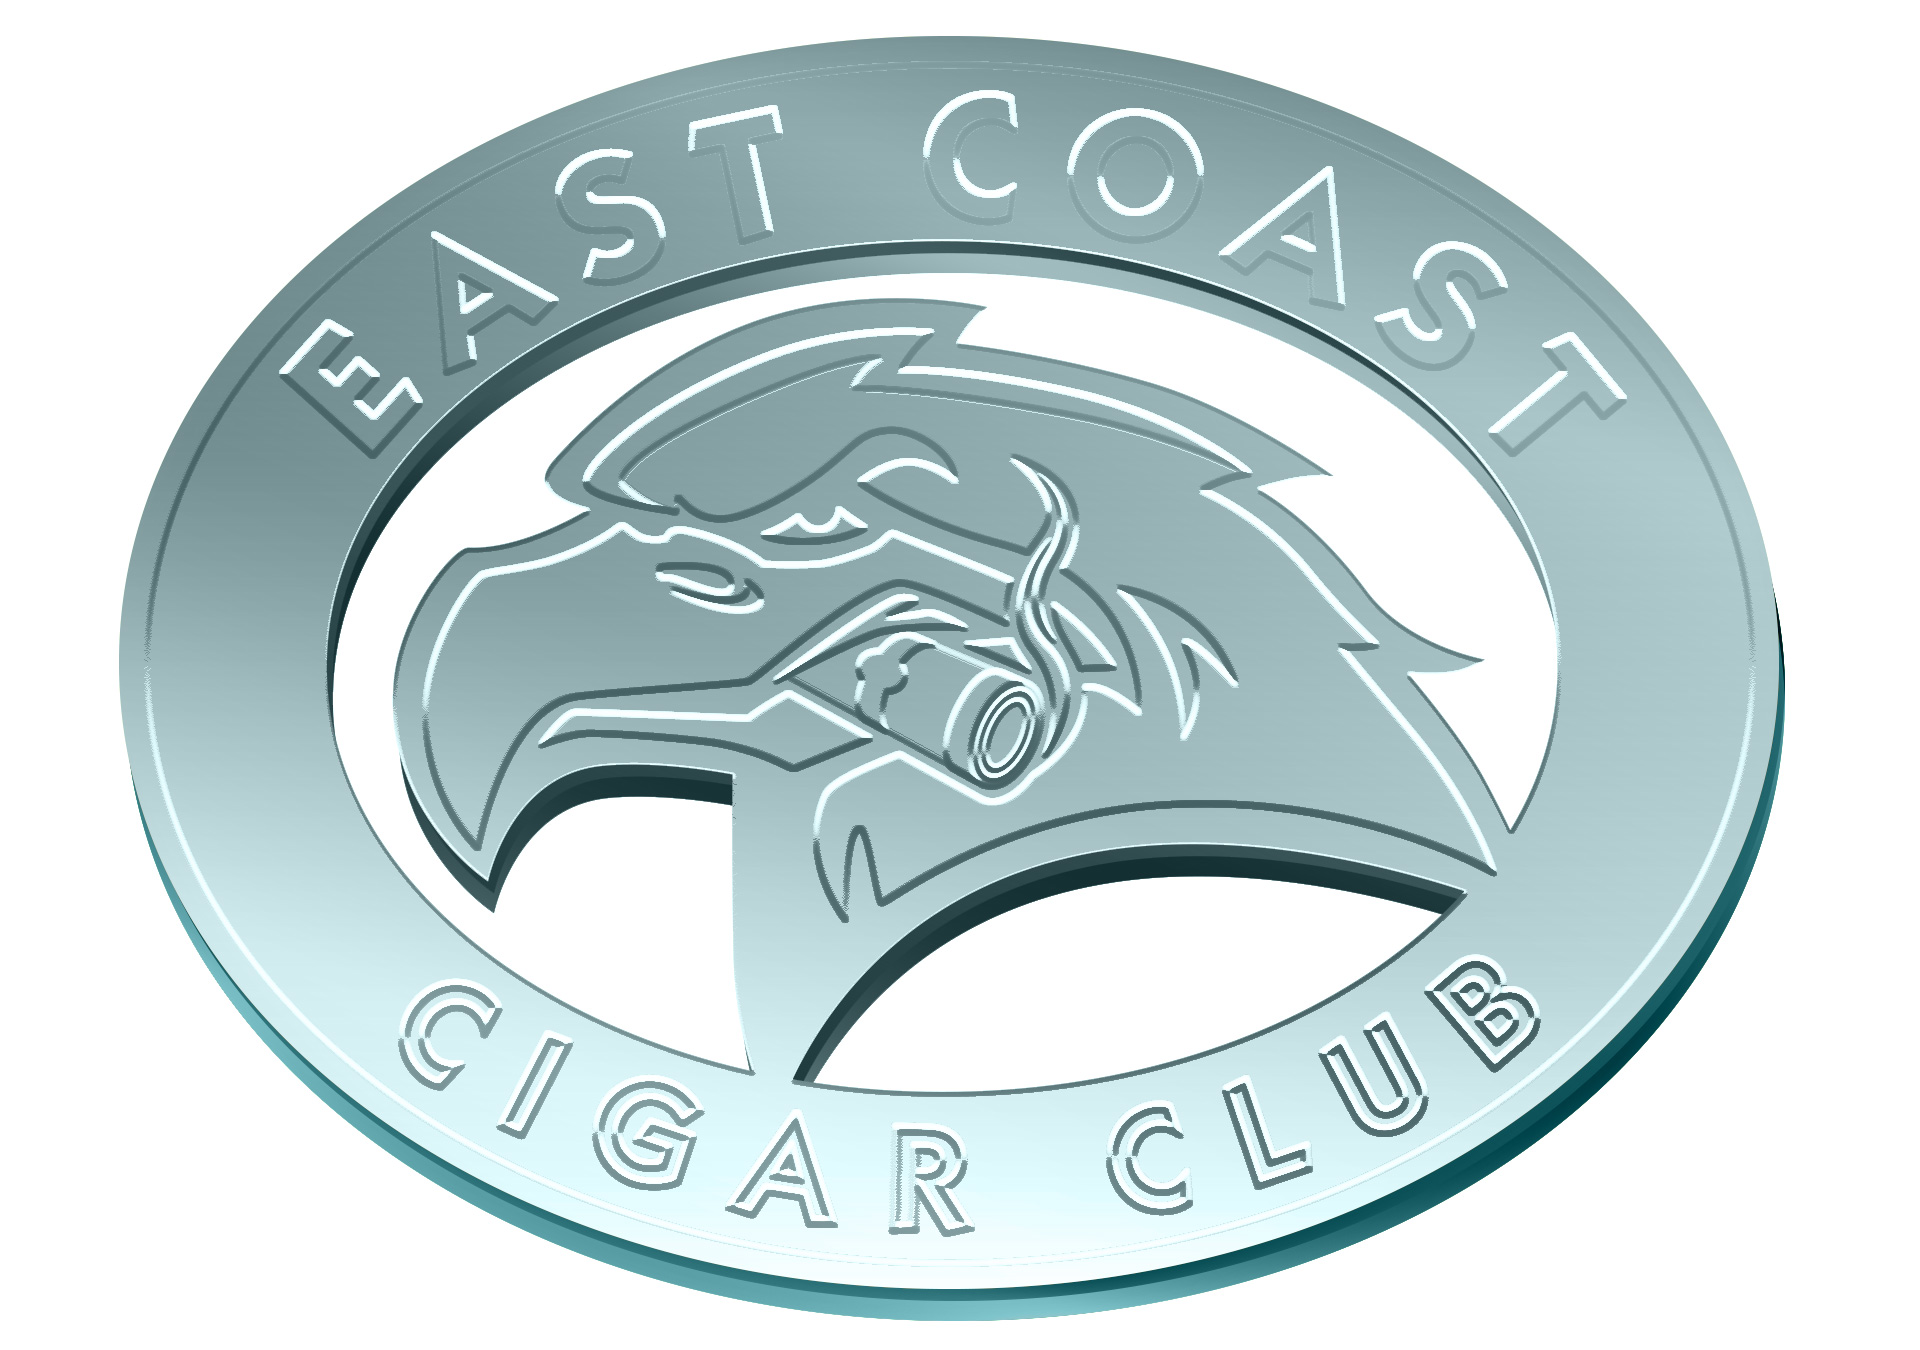 East Coast Cigar Club